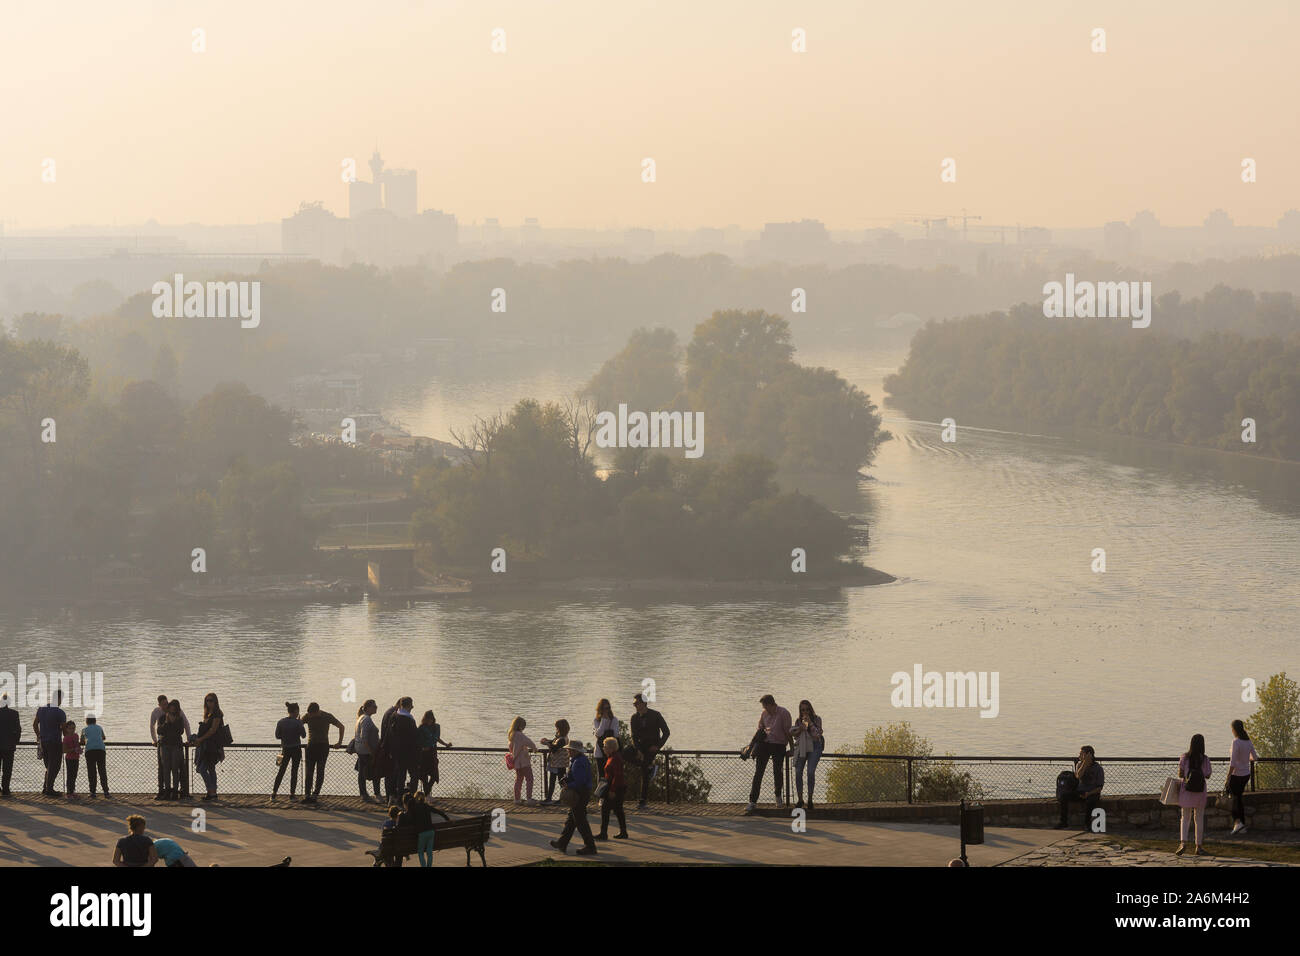 Belgrad Luftverschmutzung - Touristen auf dem Kalemegdan genießt die Aussicht von Belgrad unter dichtem Dunst aufgrund von saisonalen Luftverschmutzung. Serbien, Europa. Stockfoto